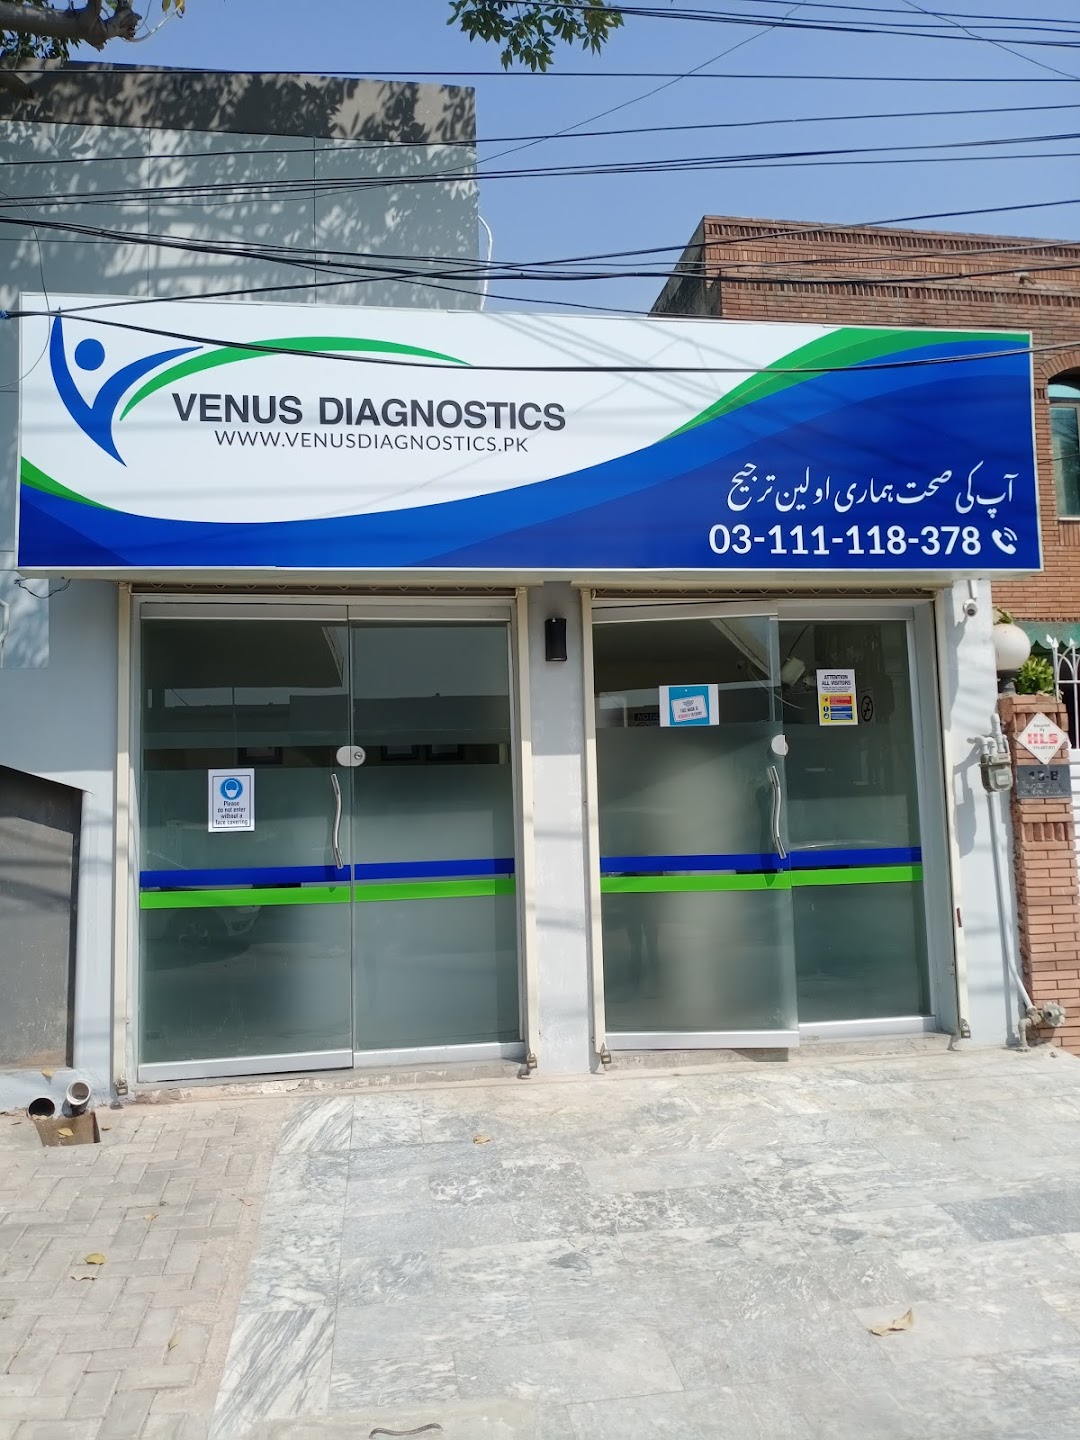 Venus Diagnostics